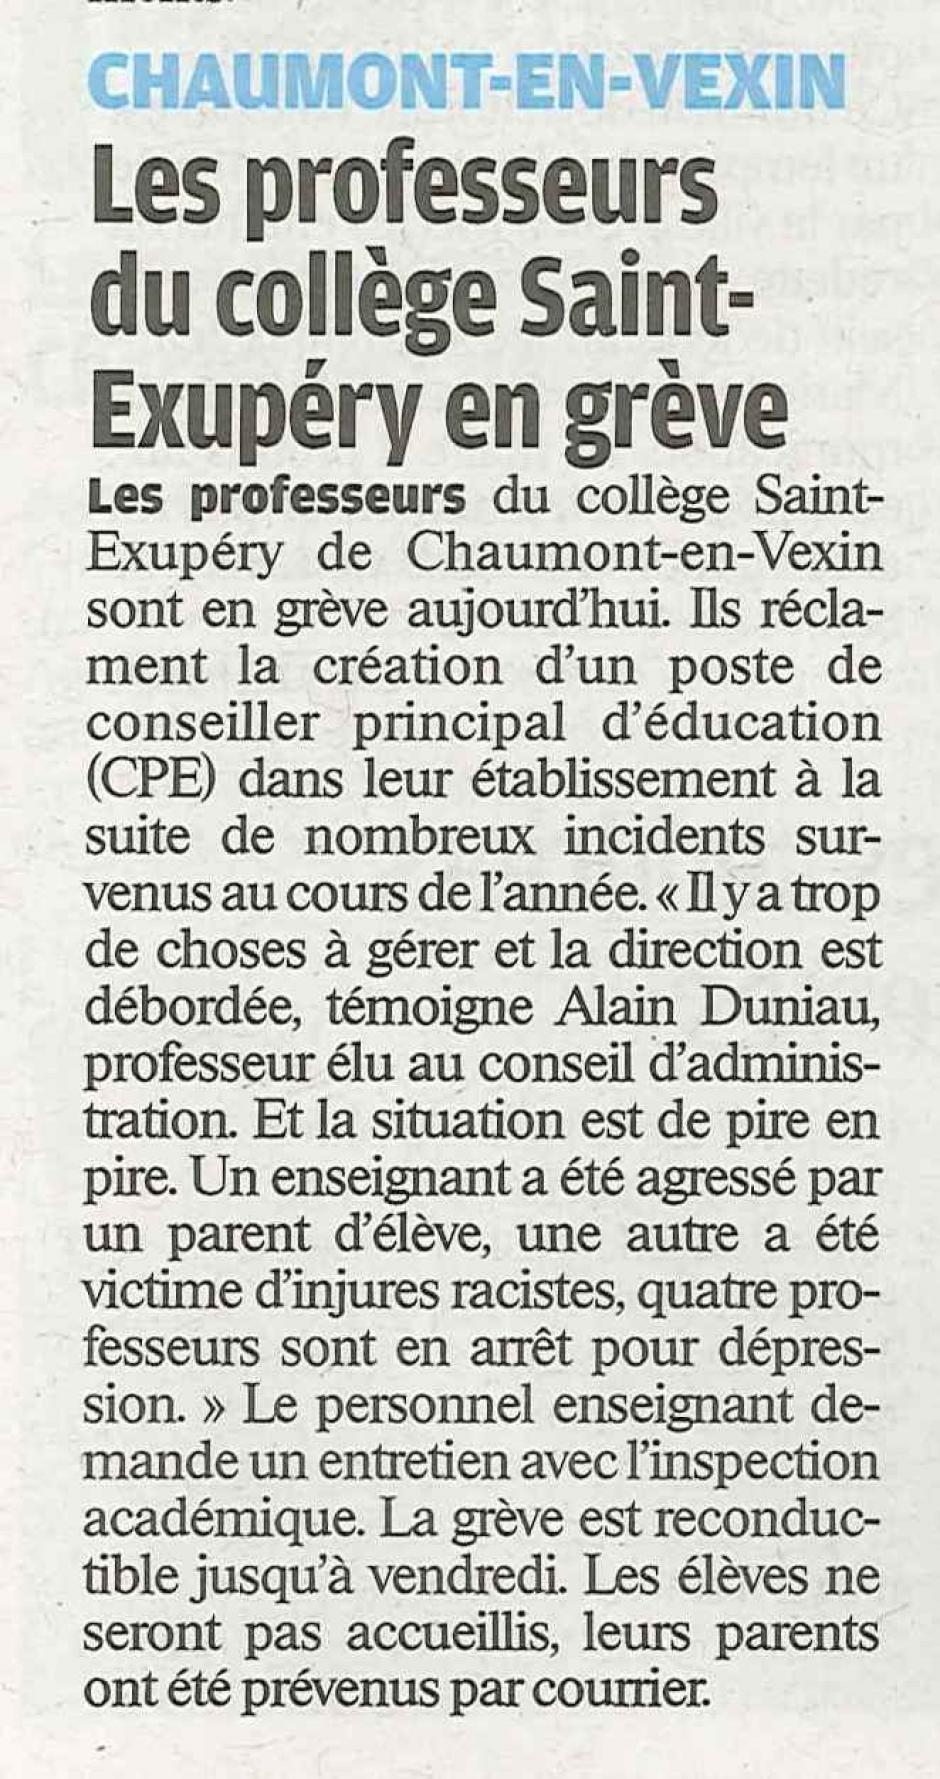 20120620-LeP-Chaumont-en-Vexin-Les professeurs du collège en grève pour la création d'un poste de CPE